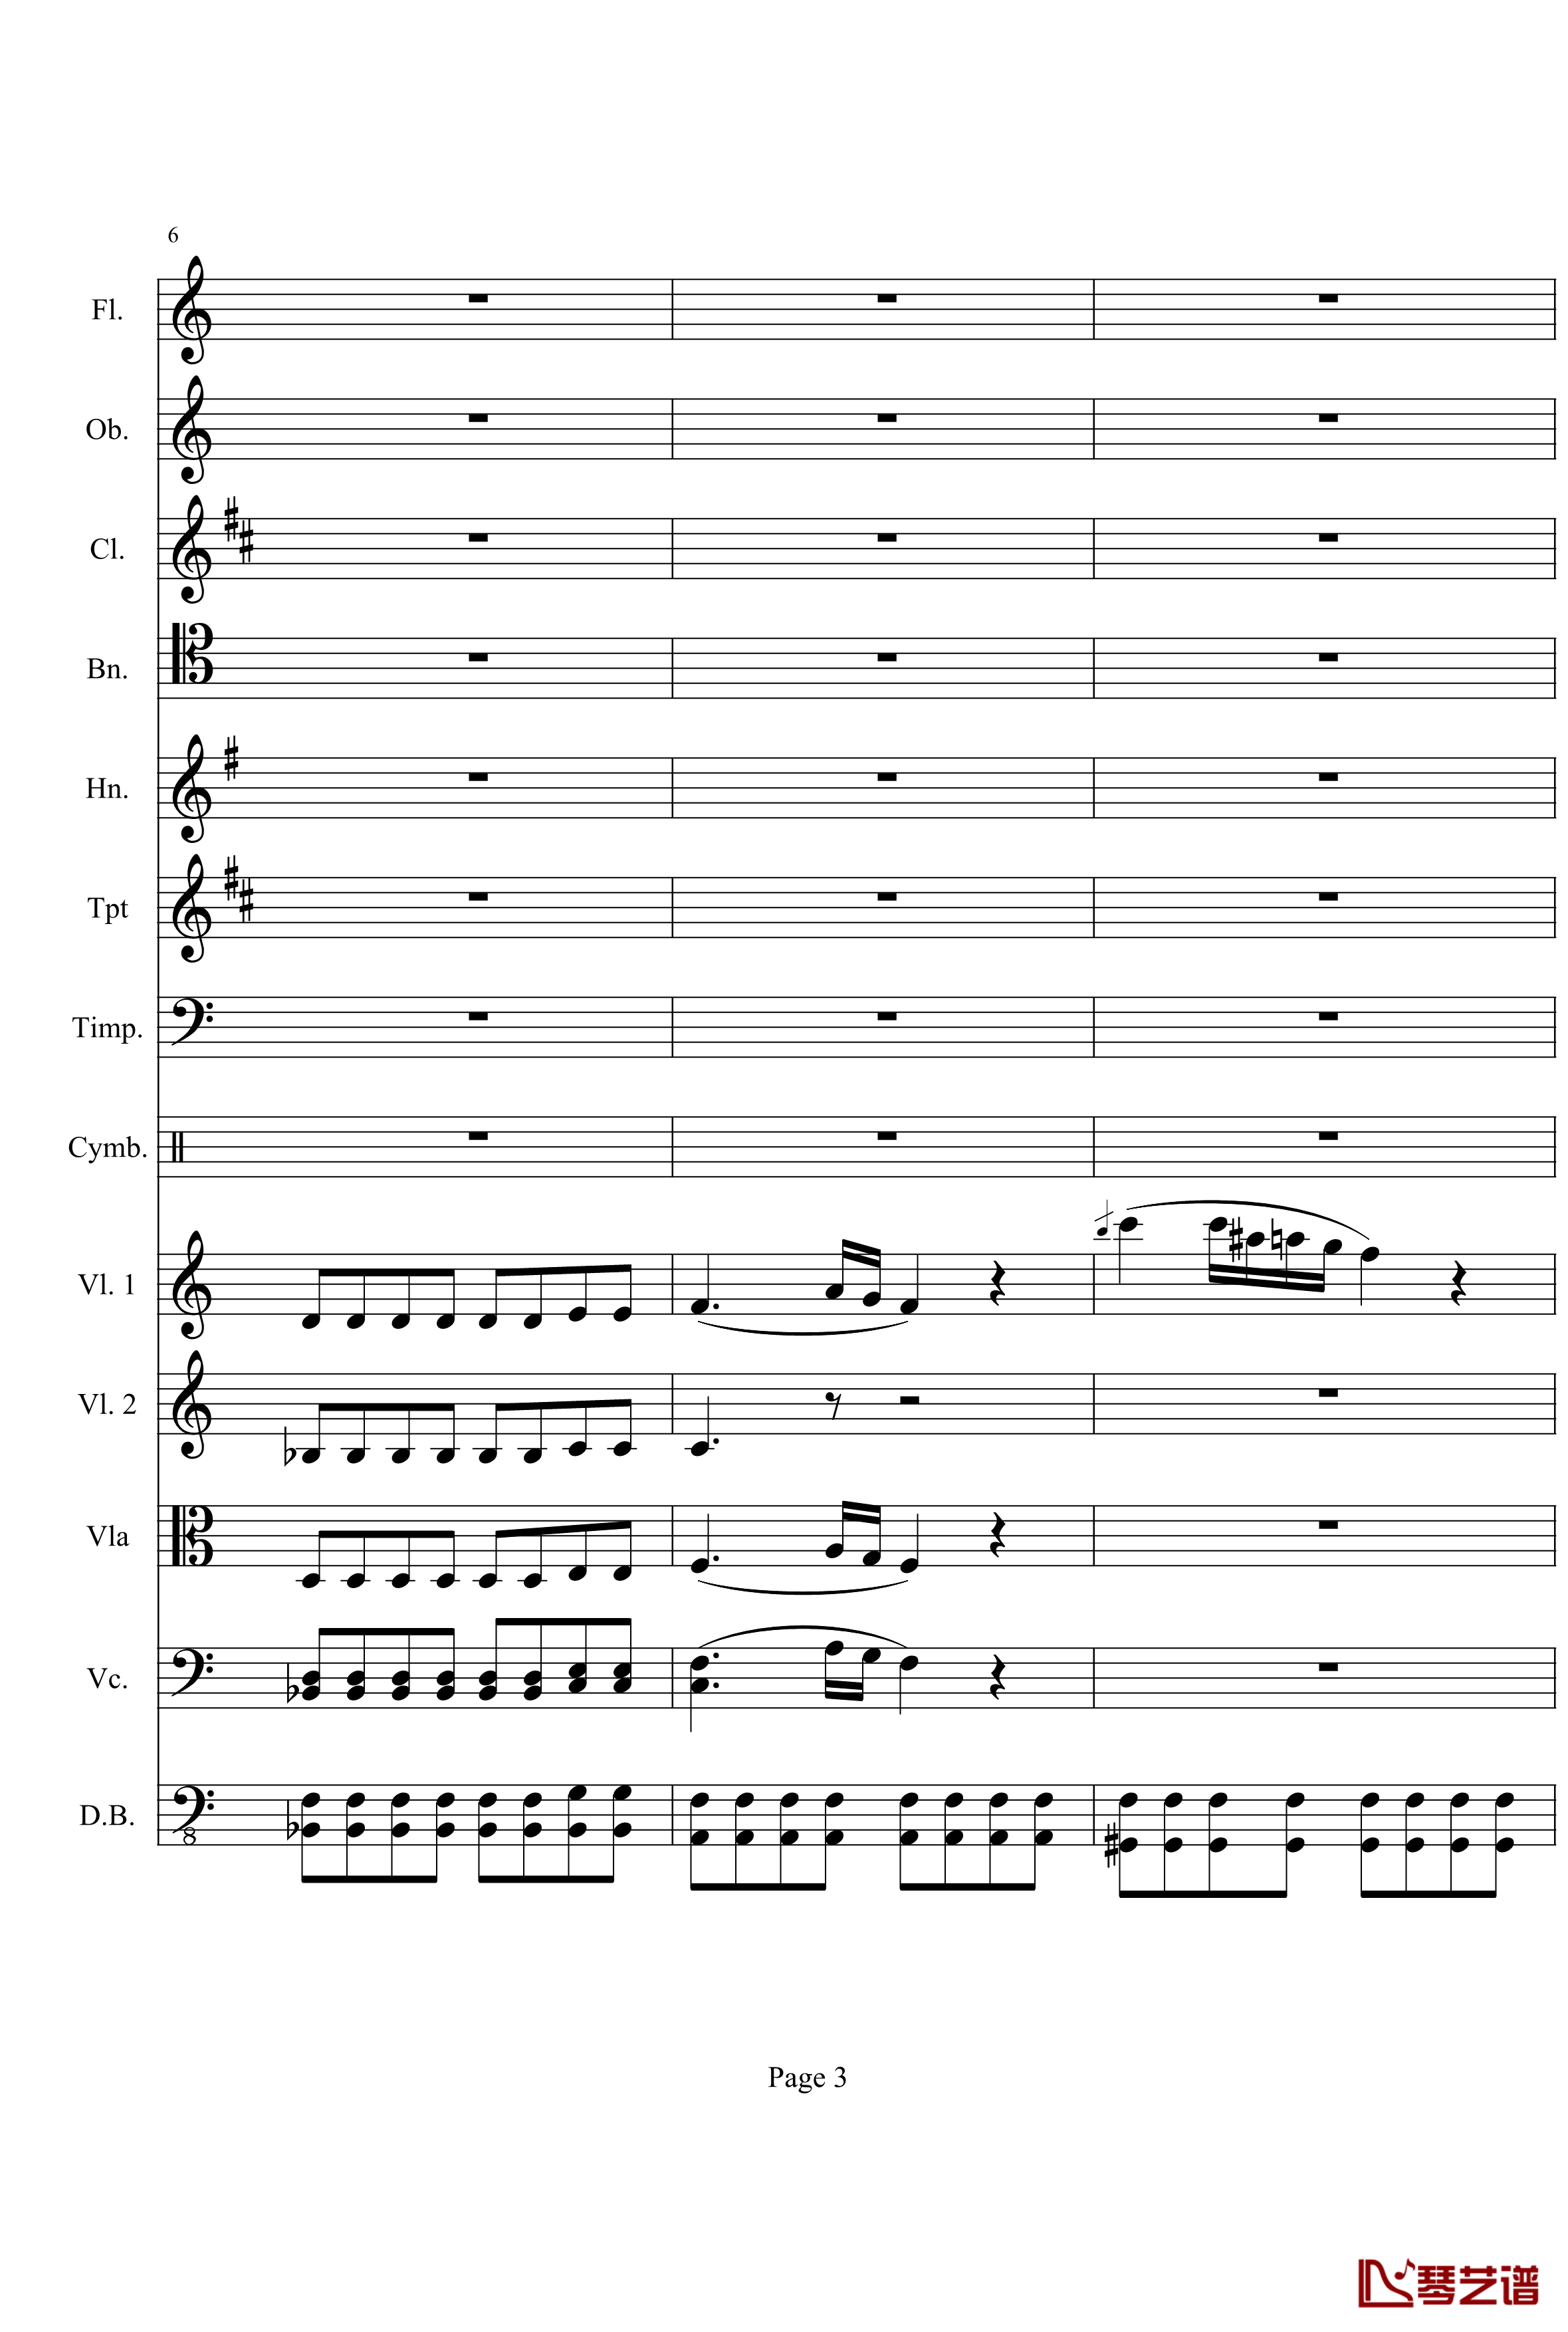 奏鸣曲之交响钢琴谱-第21-Ⅰ-贝多芬-beethoven3